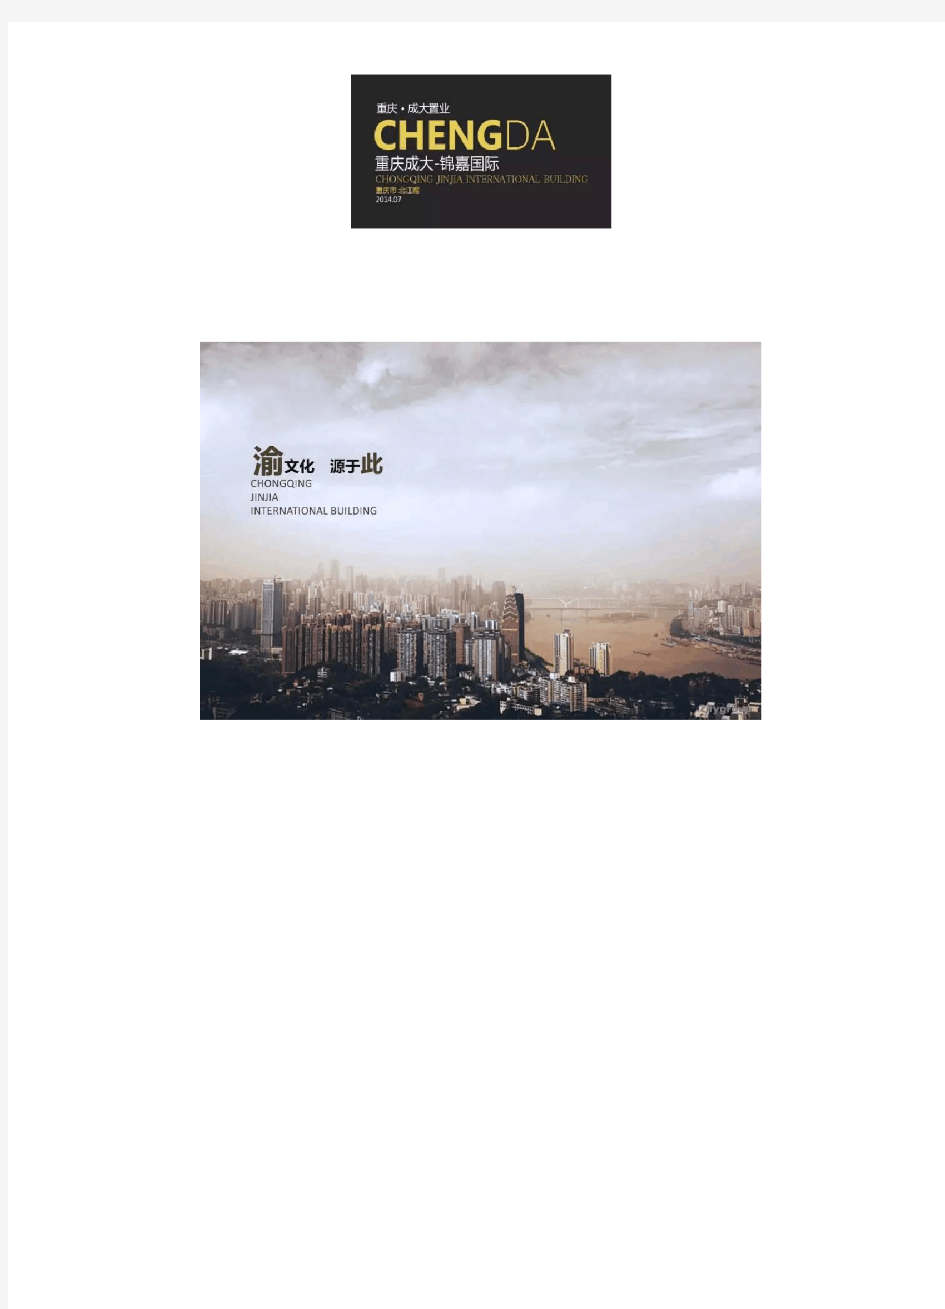 (渝文化,源于此)城市组--重庆成大锦嘉国际大厦办公空间概念设计【名师联852期】